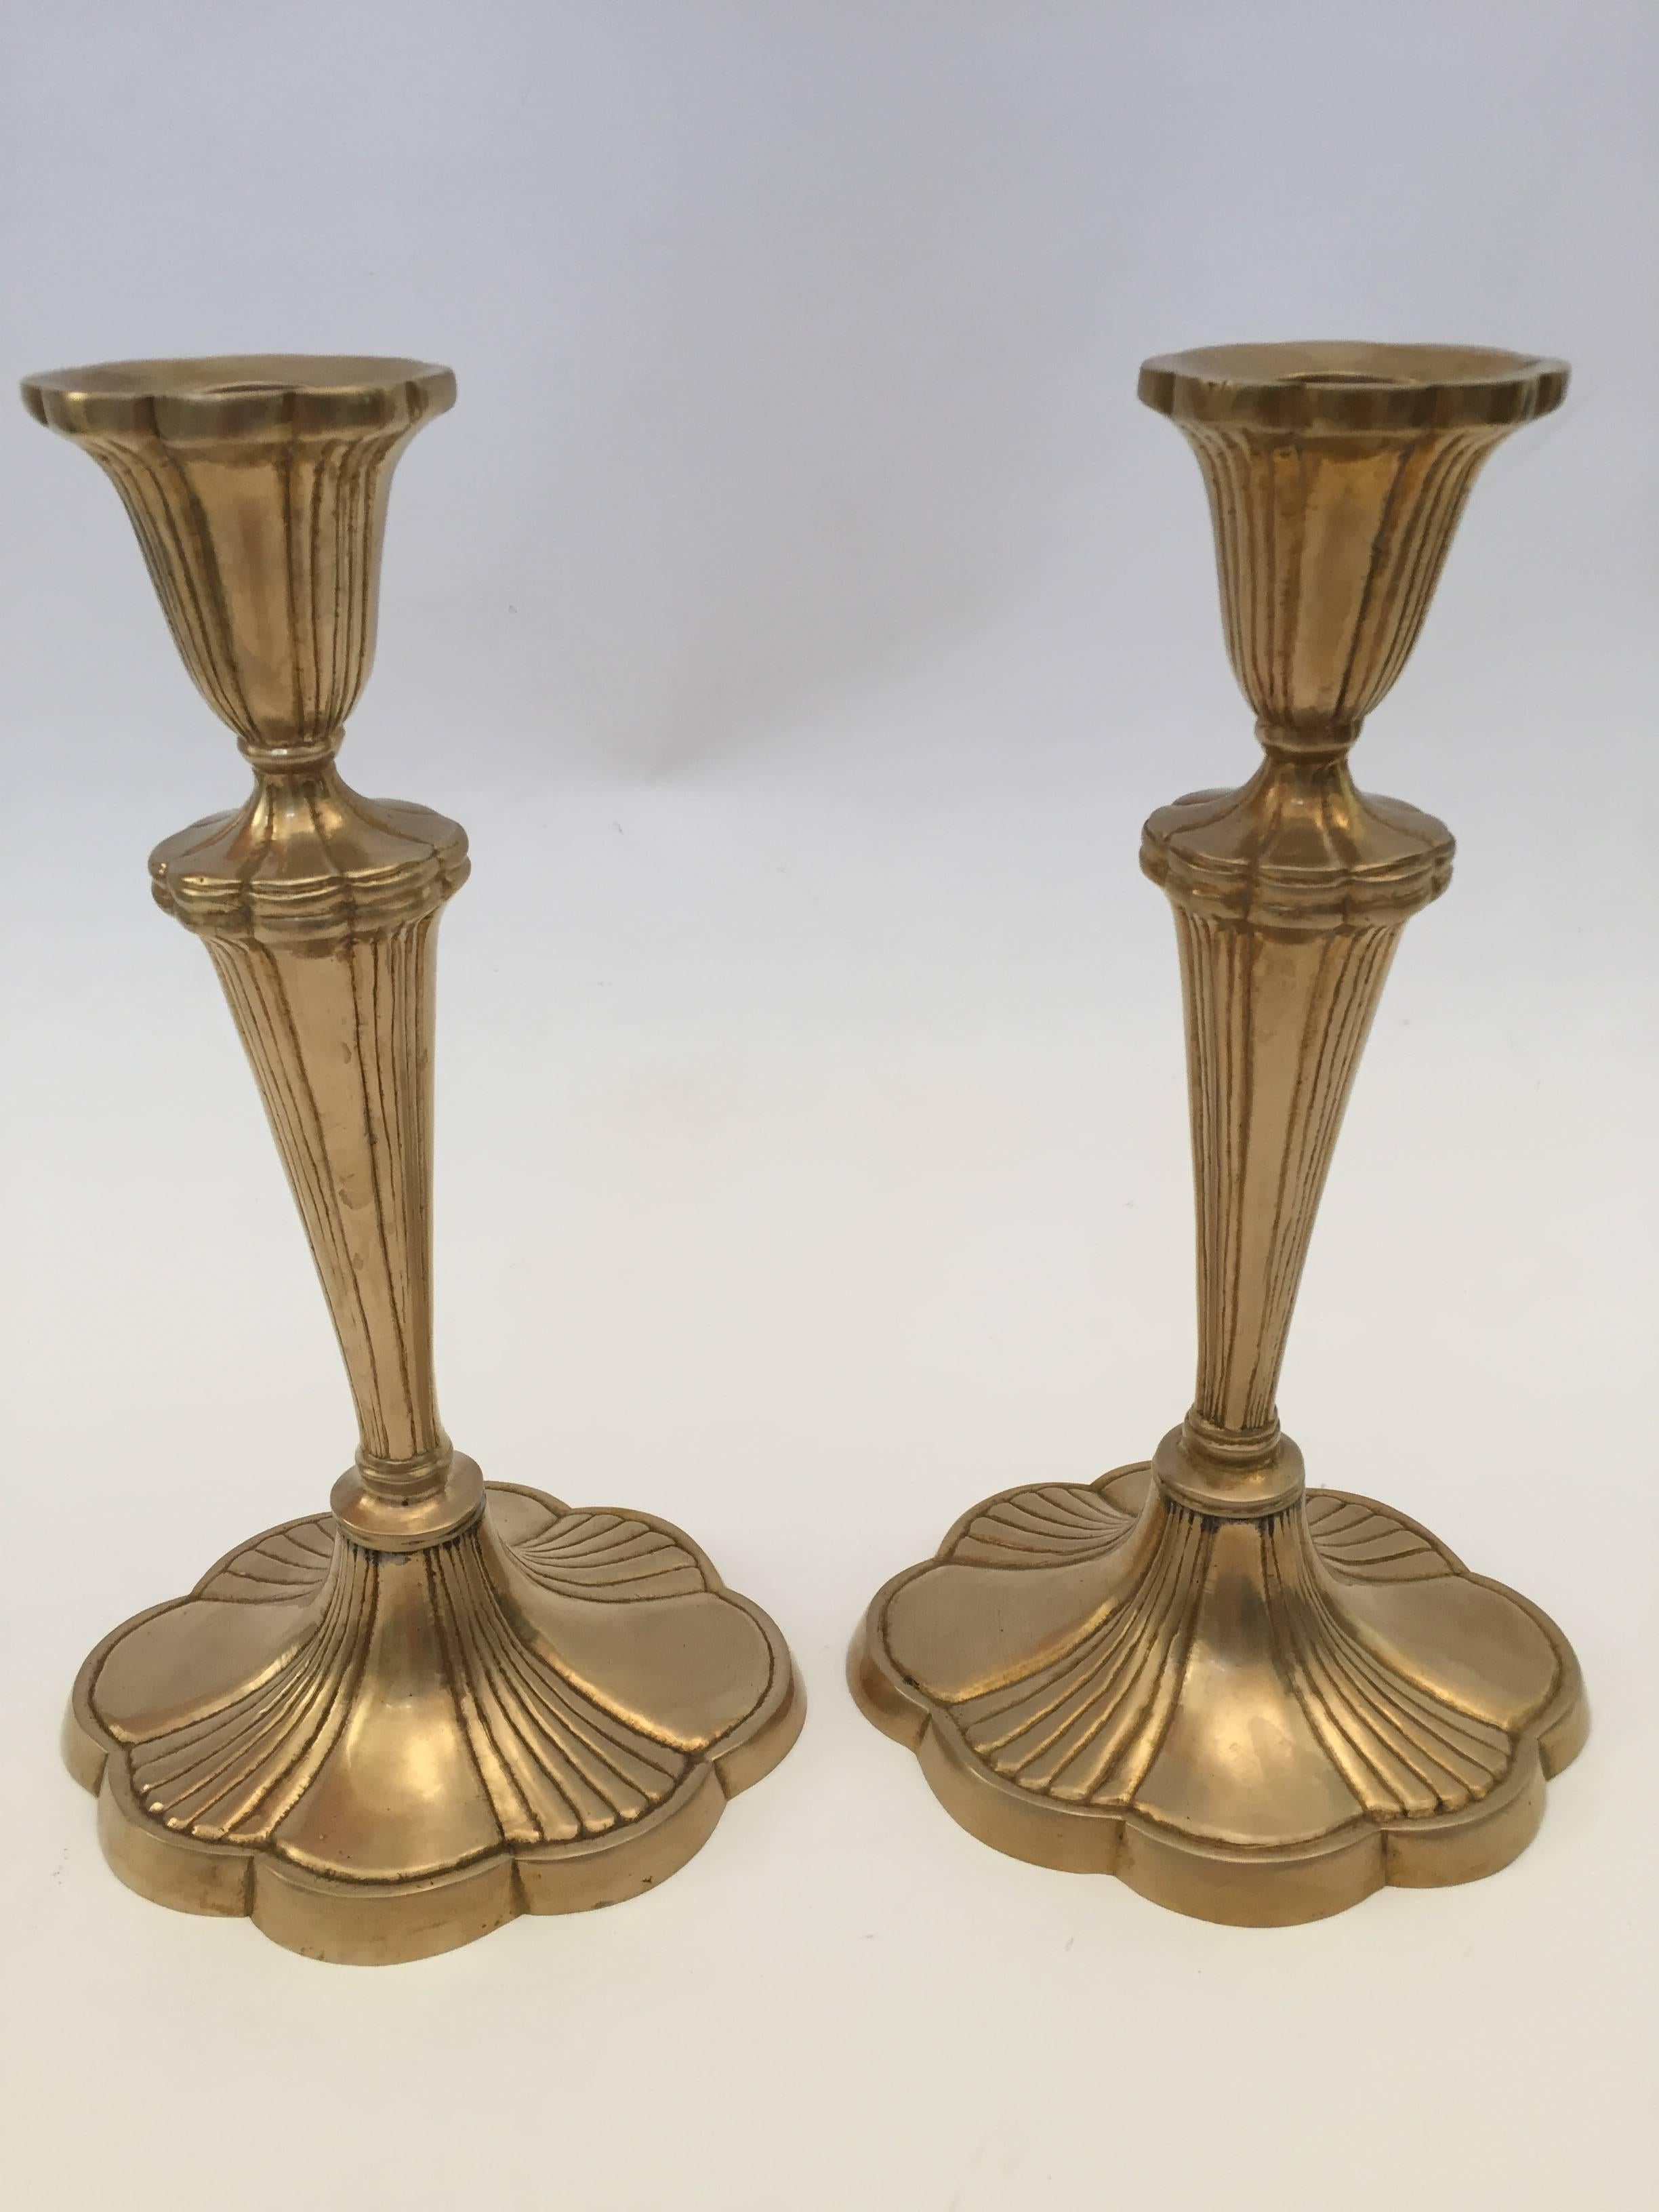 Grande paire de chandeliers en laiton lourd Art Nouveau français
Taille : 10,5